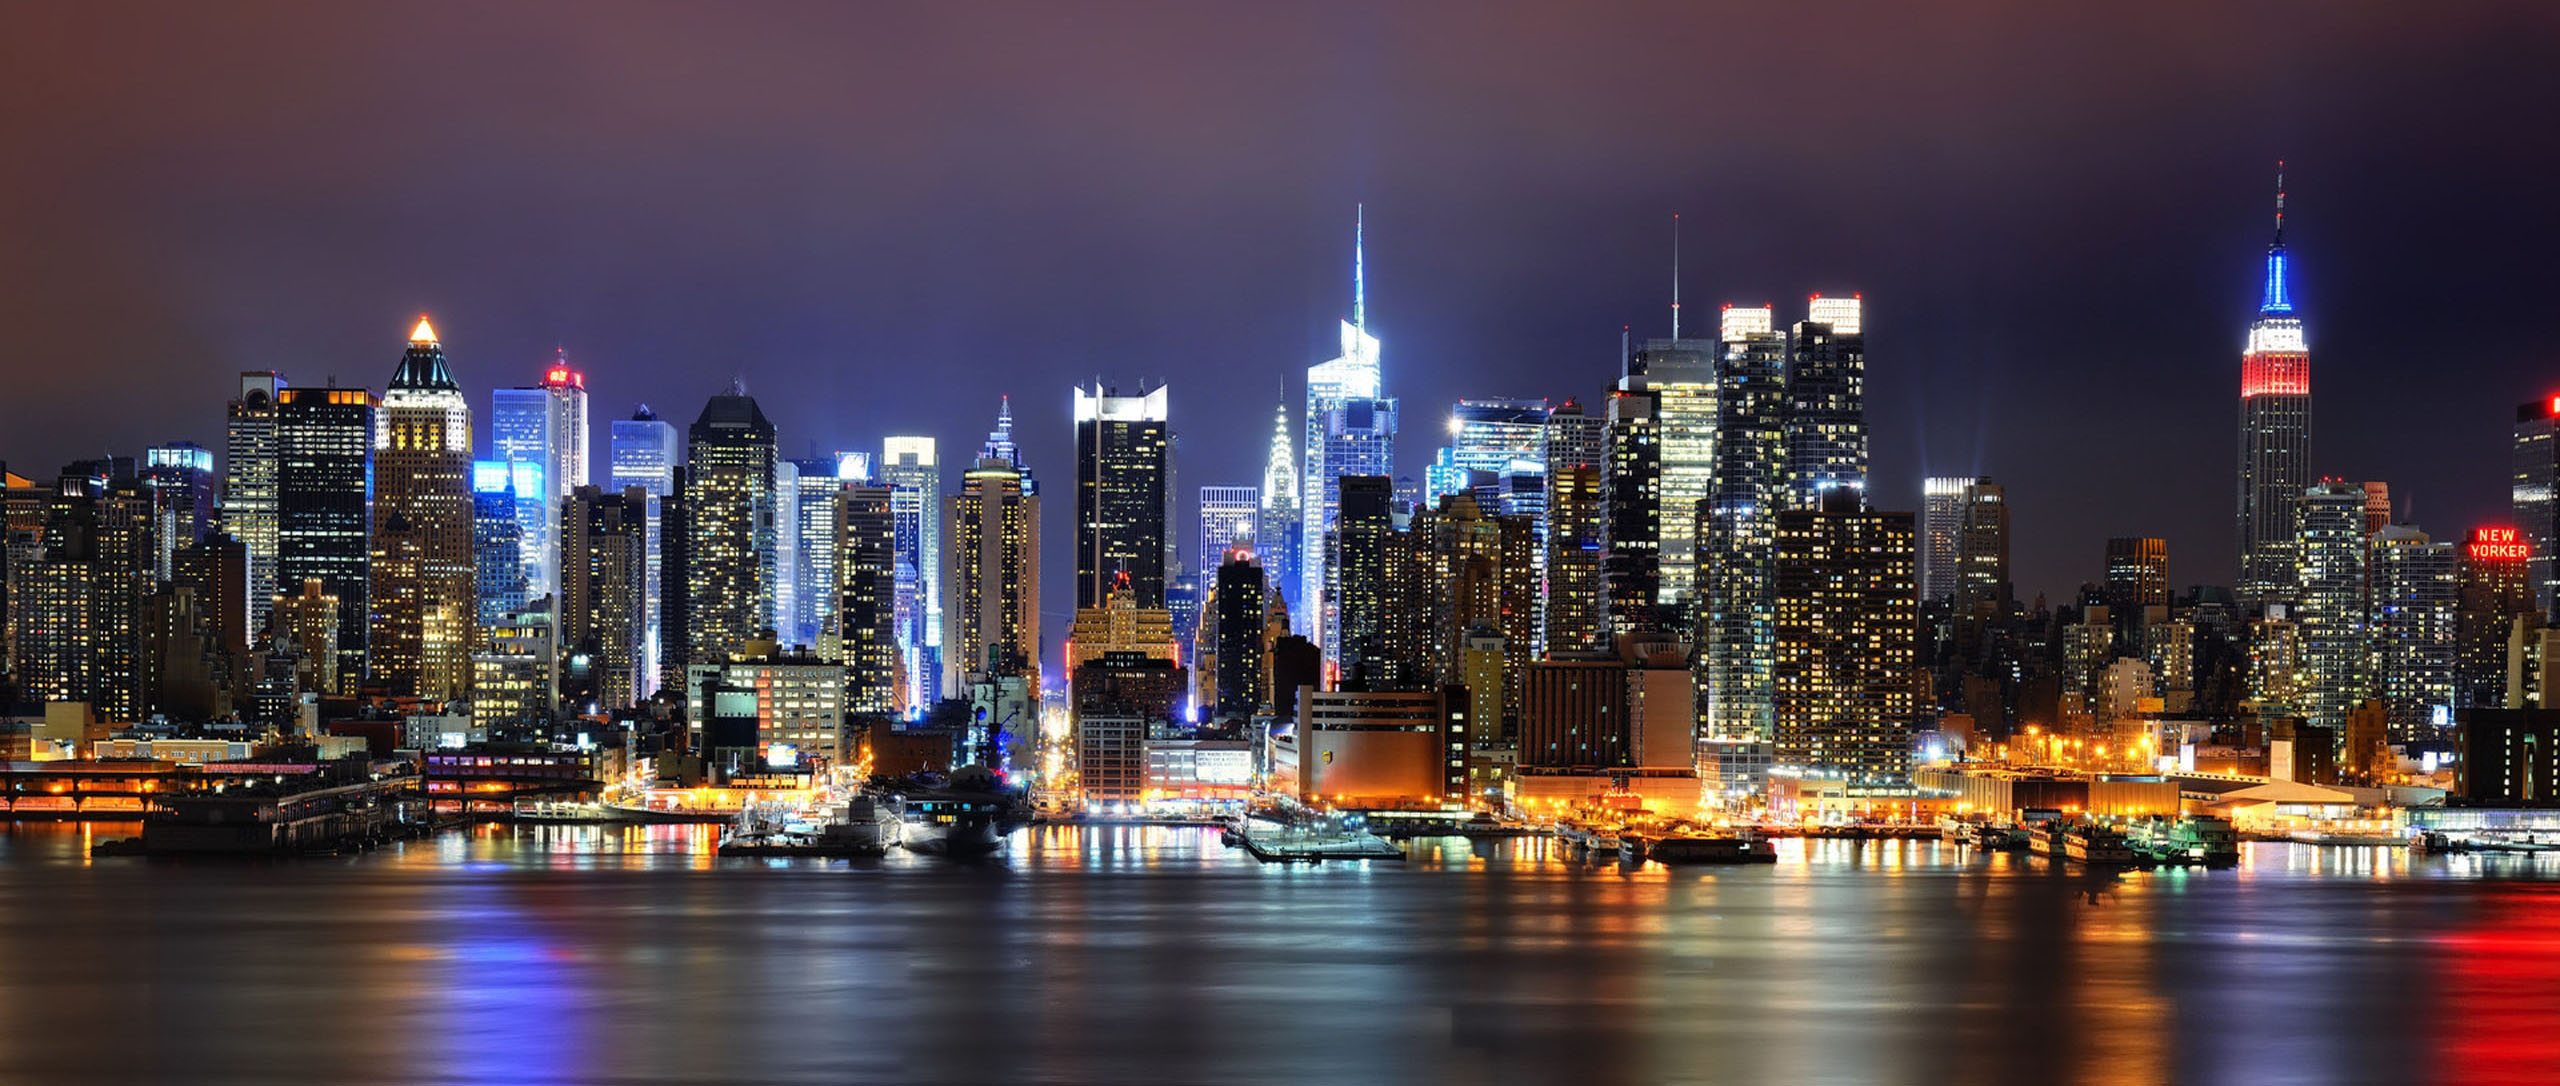 Нью-Йорк уперше очолив рейтинг найдорожчих міст світу